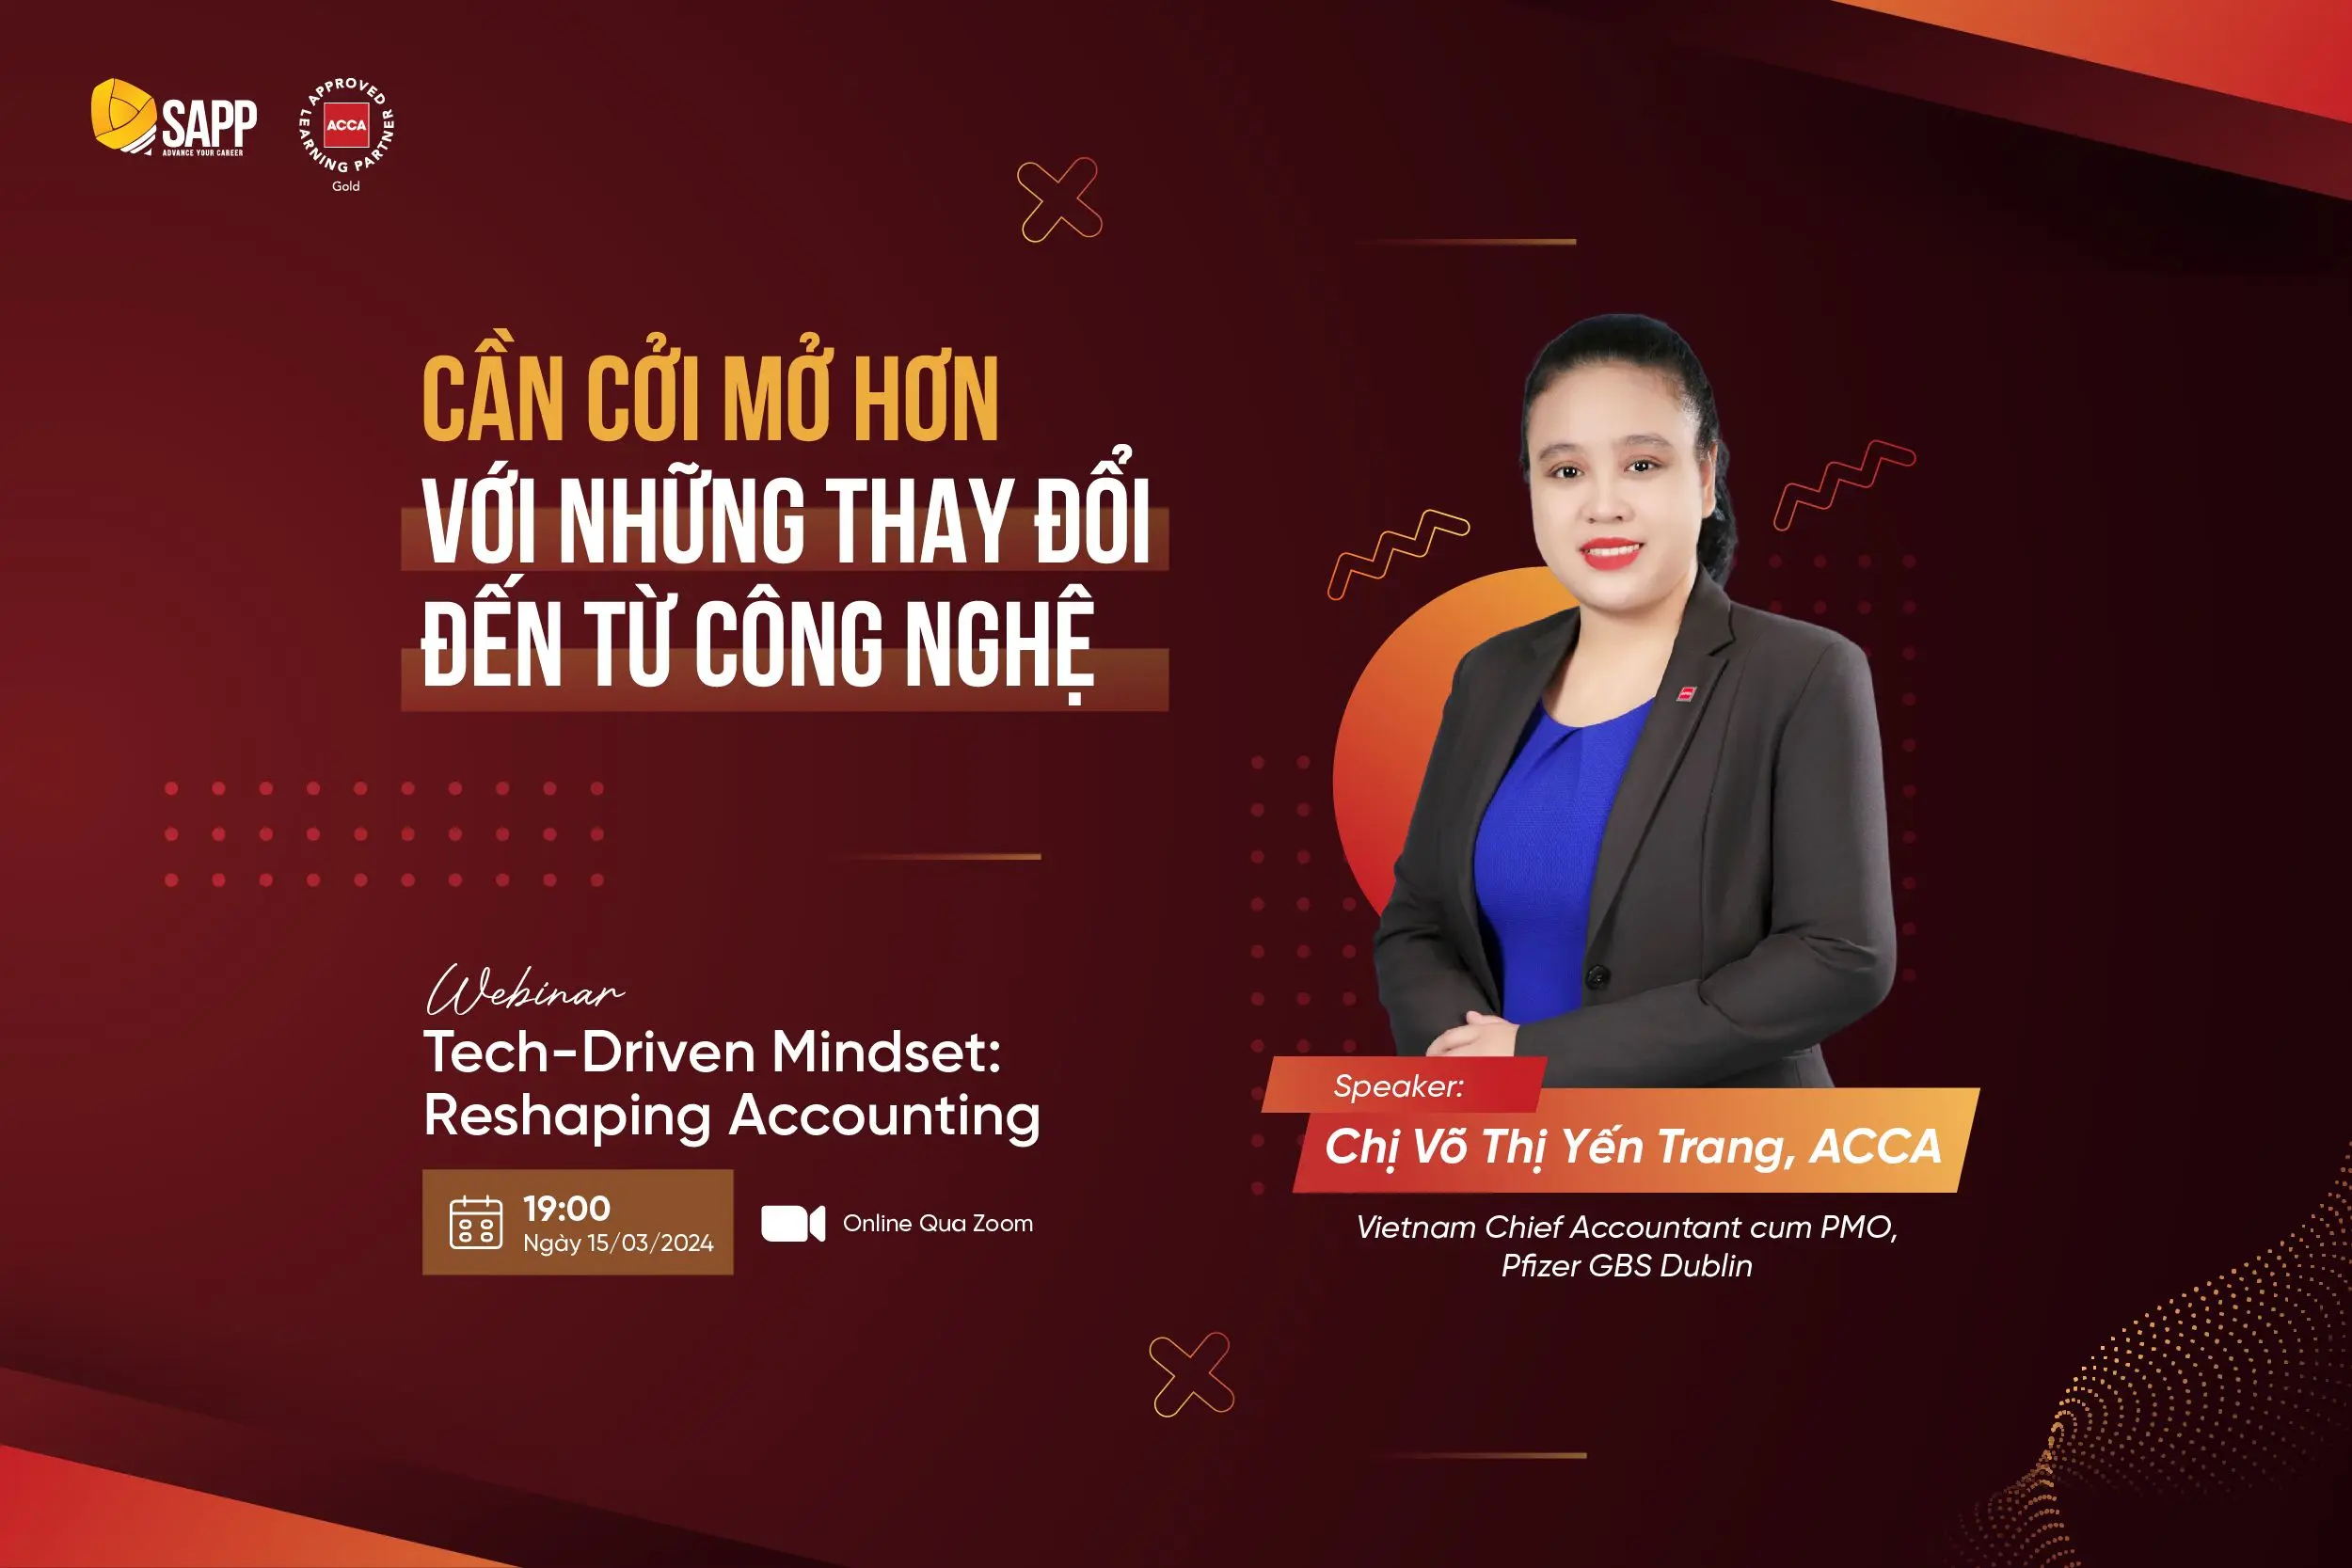 “Cần Cởi Mở Hơn Với Những Thay Đổi Đến Từ Công Nghệ”:  Lời Khuyên Từ Kế Toán Trưởng Pfizer Vietnam Cho Nhân Sự Trẻ Ngành Kế Toán - Tài Chính